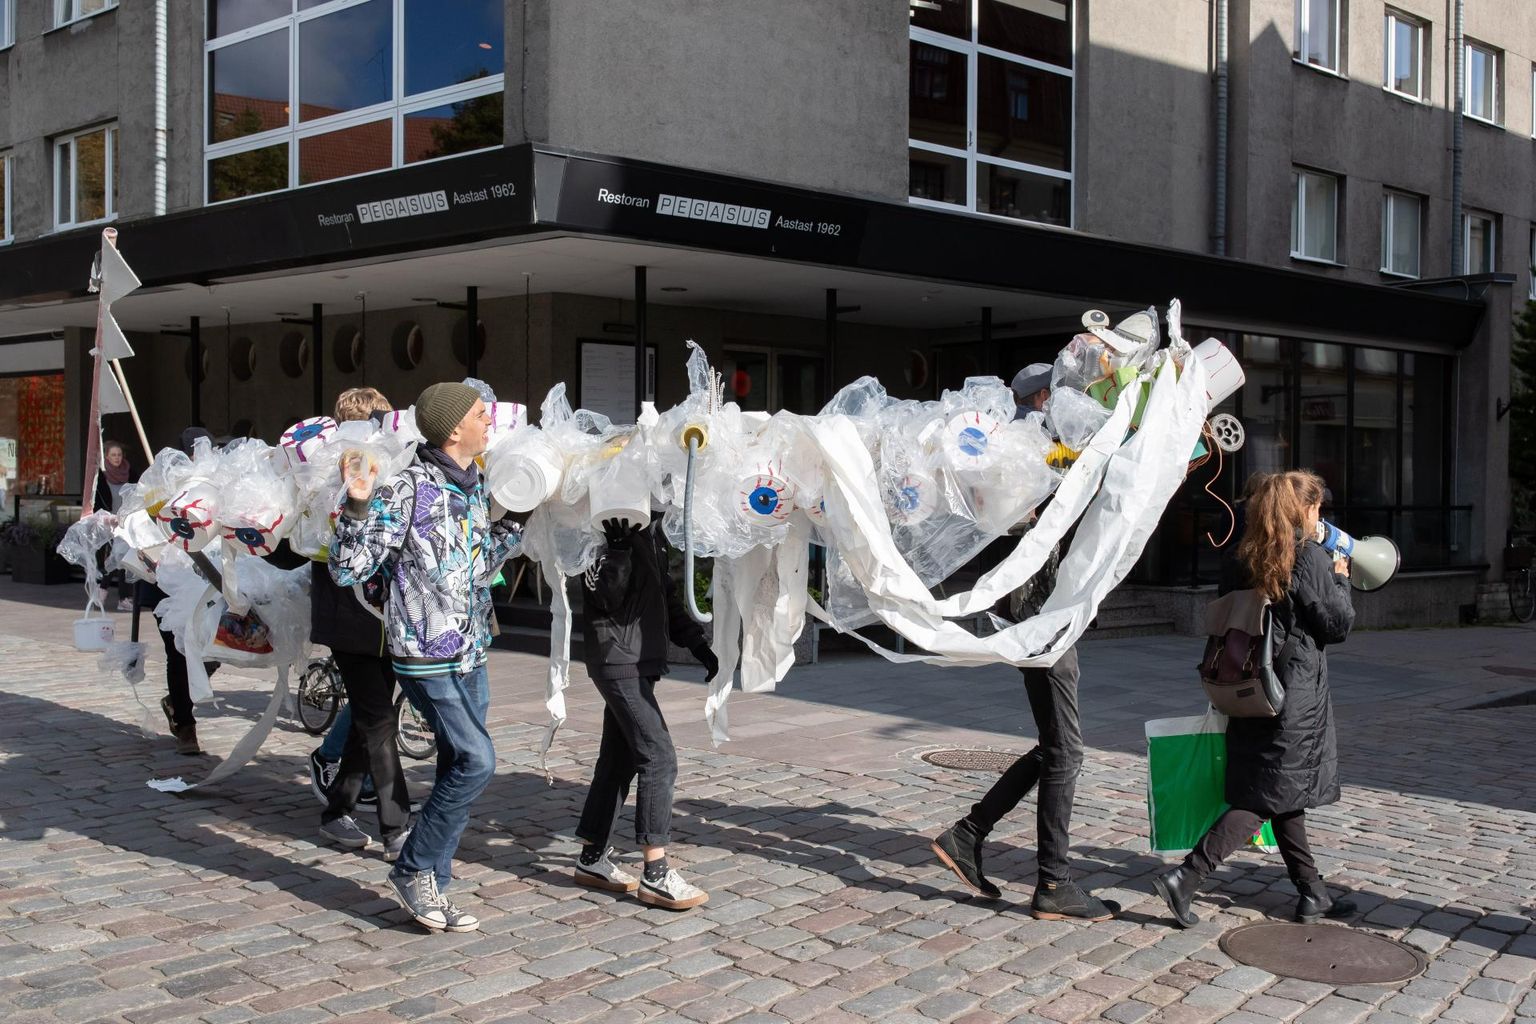 Kliimaprotesti aktsioon nädala eest Week4Future raames. Kümmekond inimest kõndisid Plastikolliga Balti jaamast Tammsaare parki.